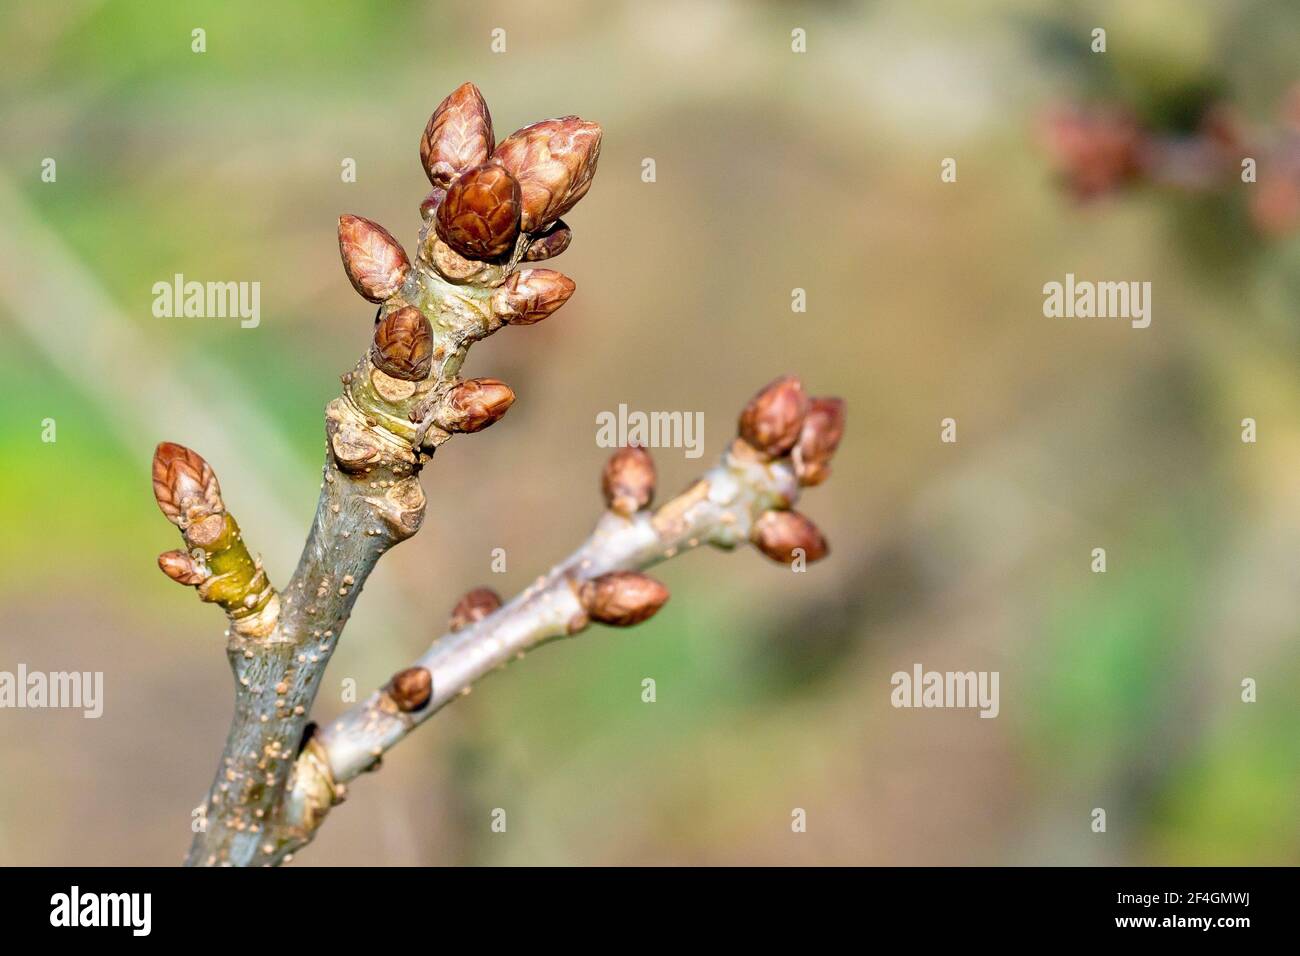 Boutons de feuilles de chêne anglais (quercus robur), également connu sous le nom de Pedunculate Oak, gros plan montrant un groupe de bourgeons à l'extrémité d'une branche. Banque D'Images